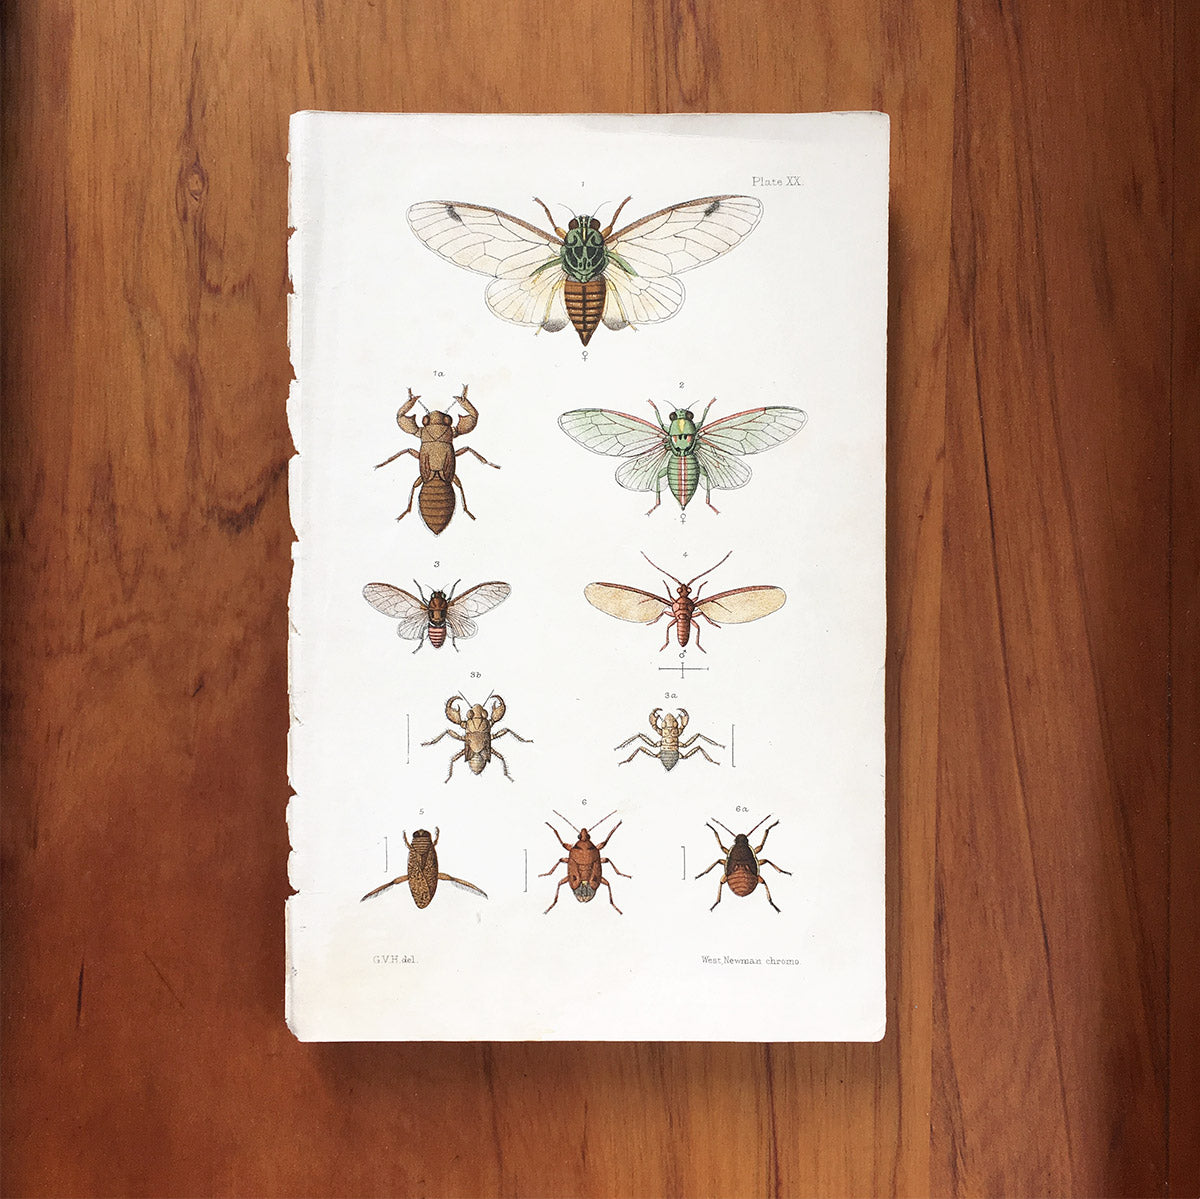 New Zealand insects. Plate XX. Hemiptera